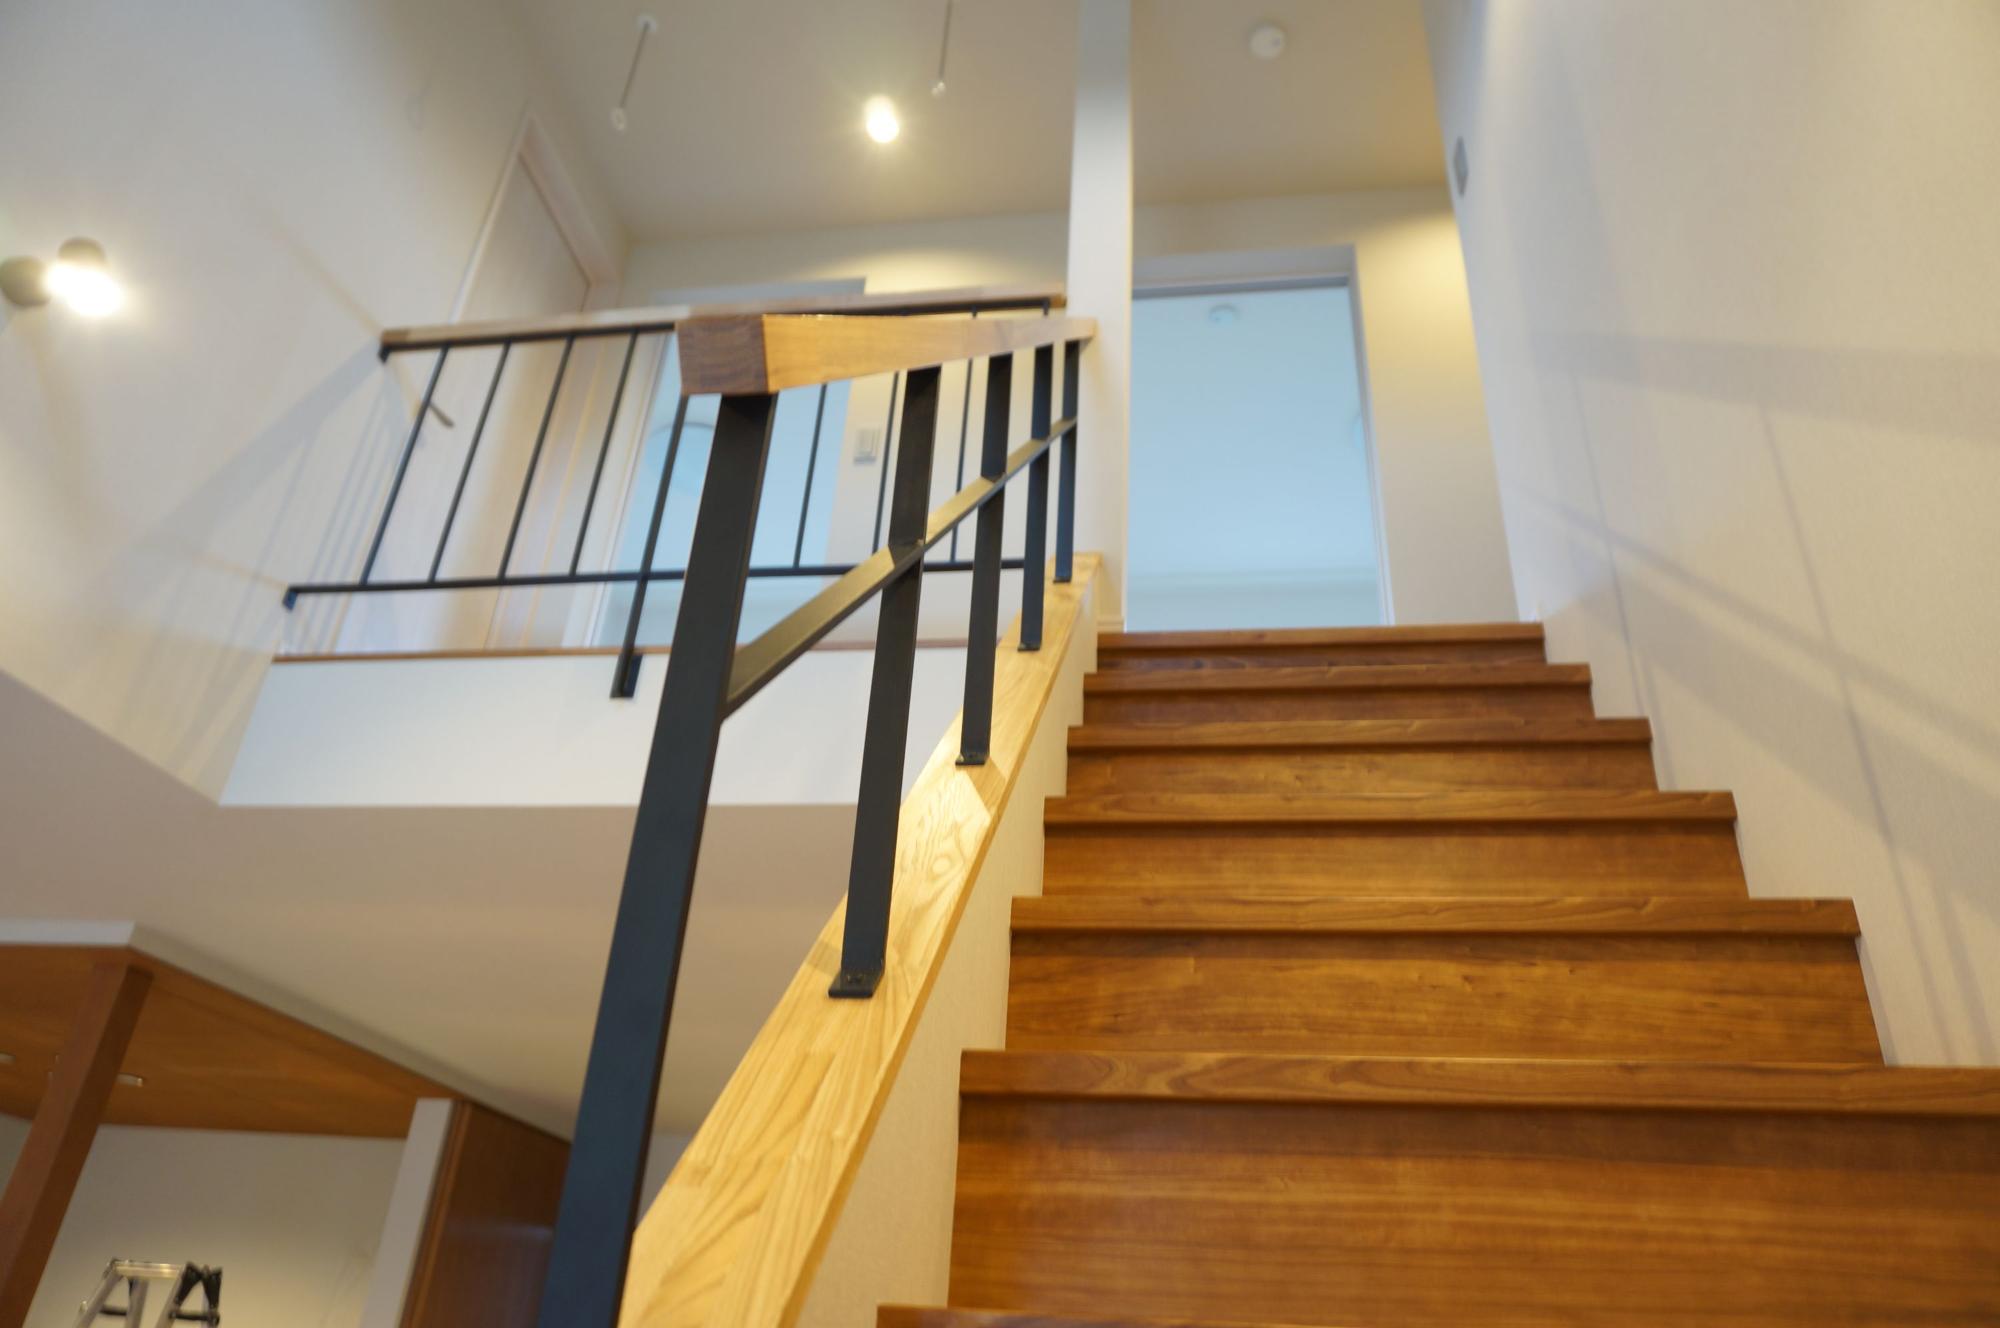 シンプル・ナチュラル・モダン・インダストリアル・ブルックリンスタイルな階段の実例写真